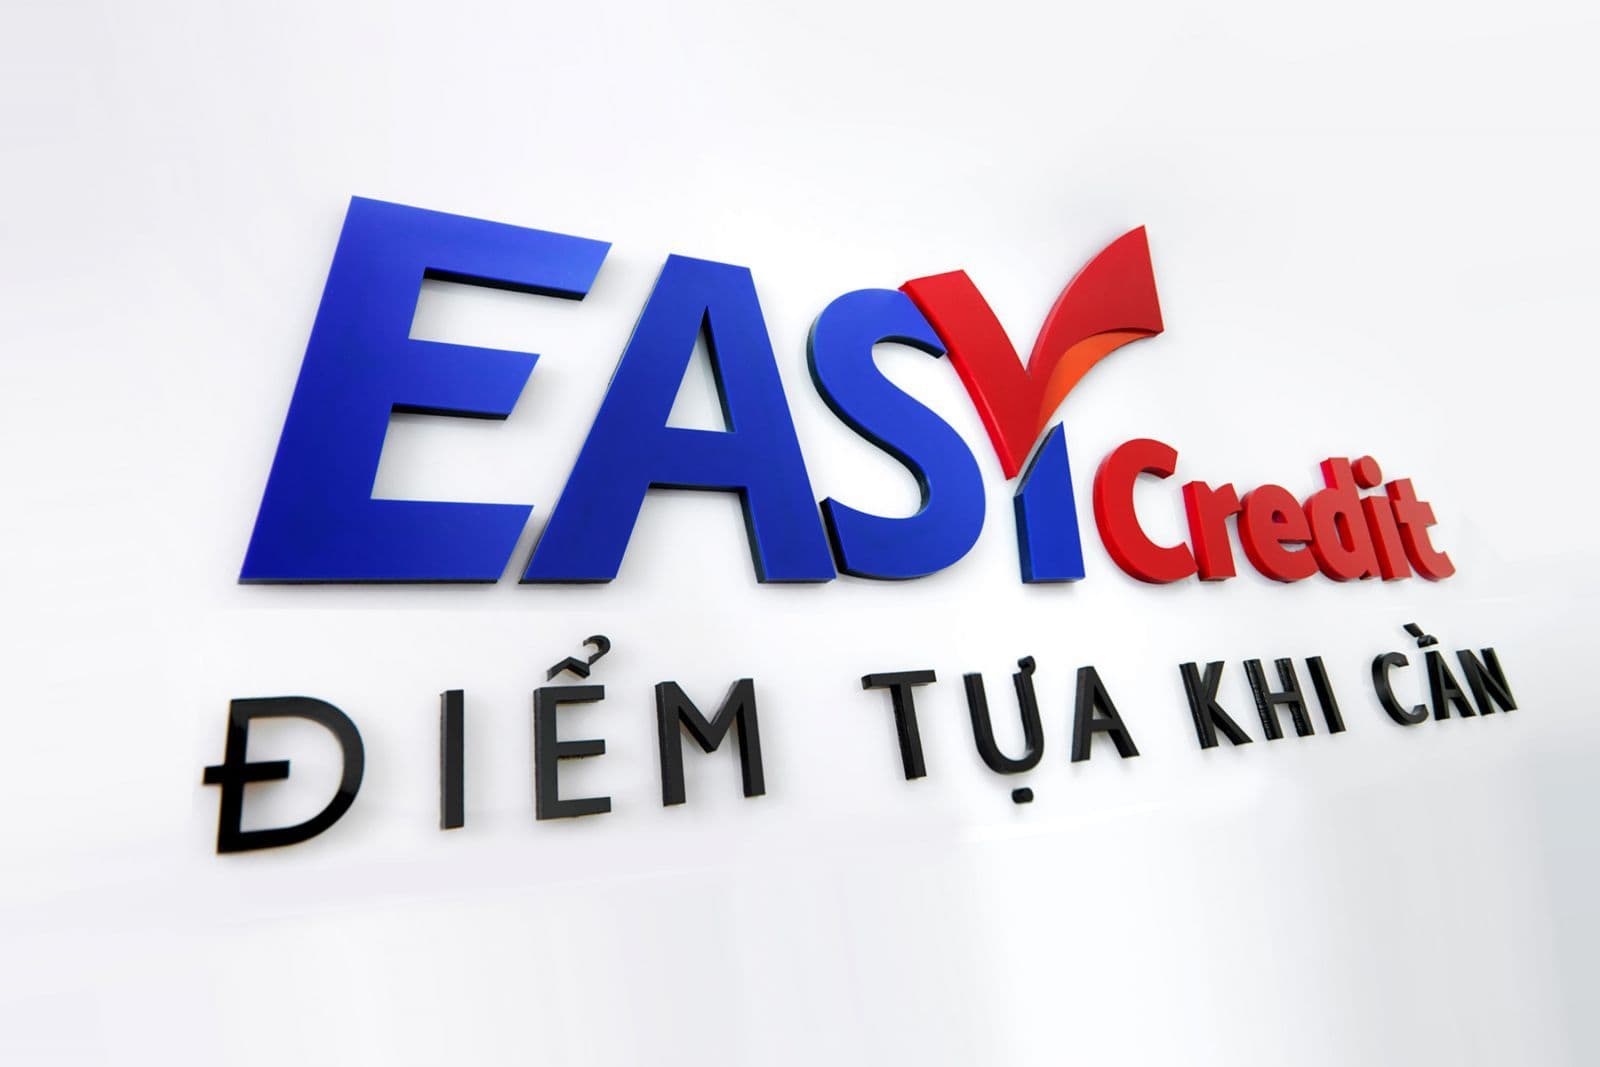 easycredit vay tiền chấp nhận nợ xấu